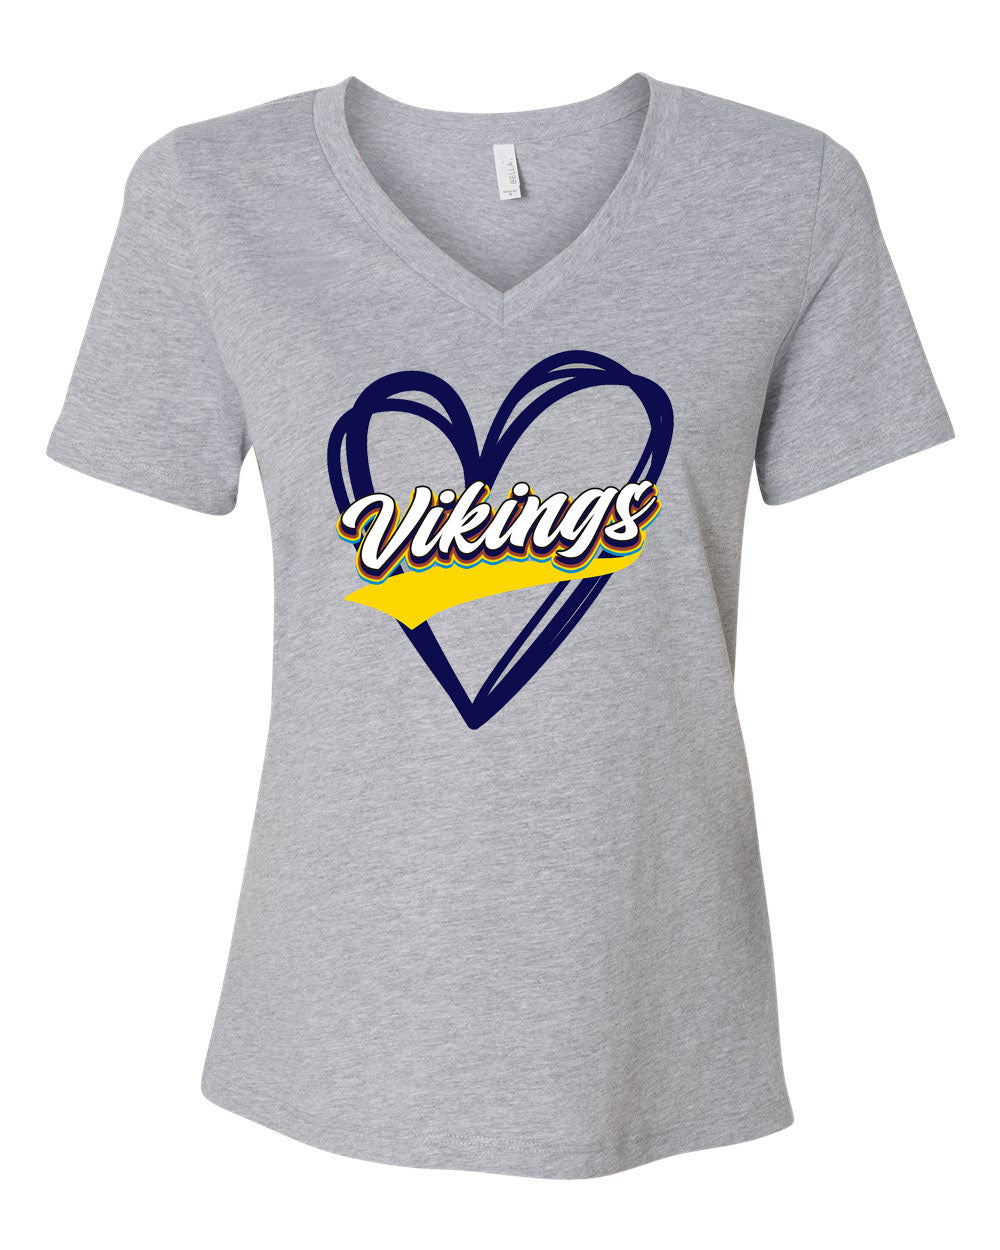 Vernon Design 1 V-neck T-shirt